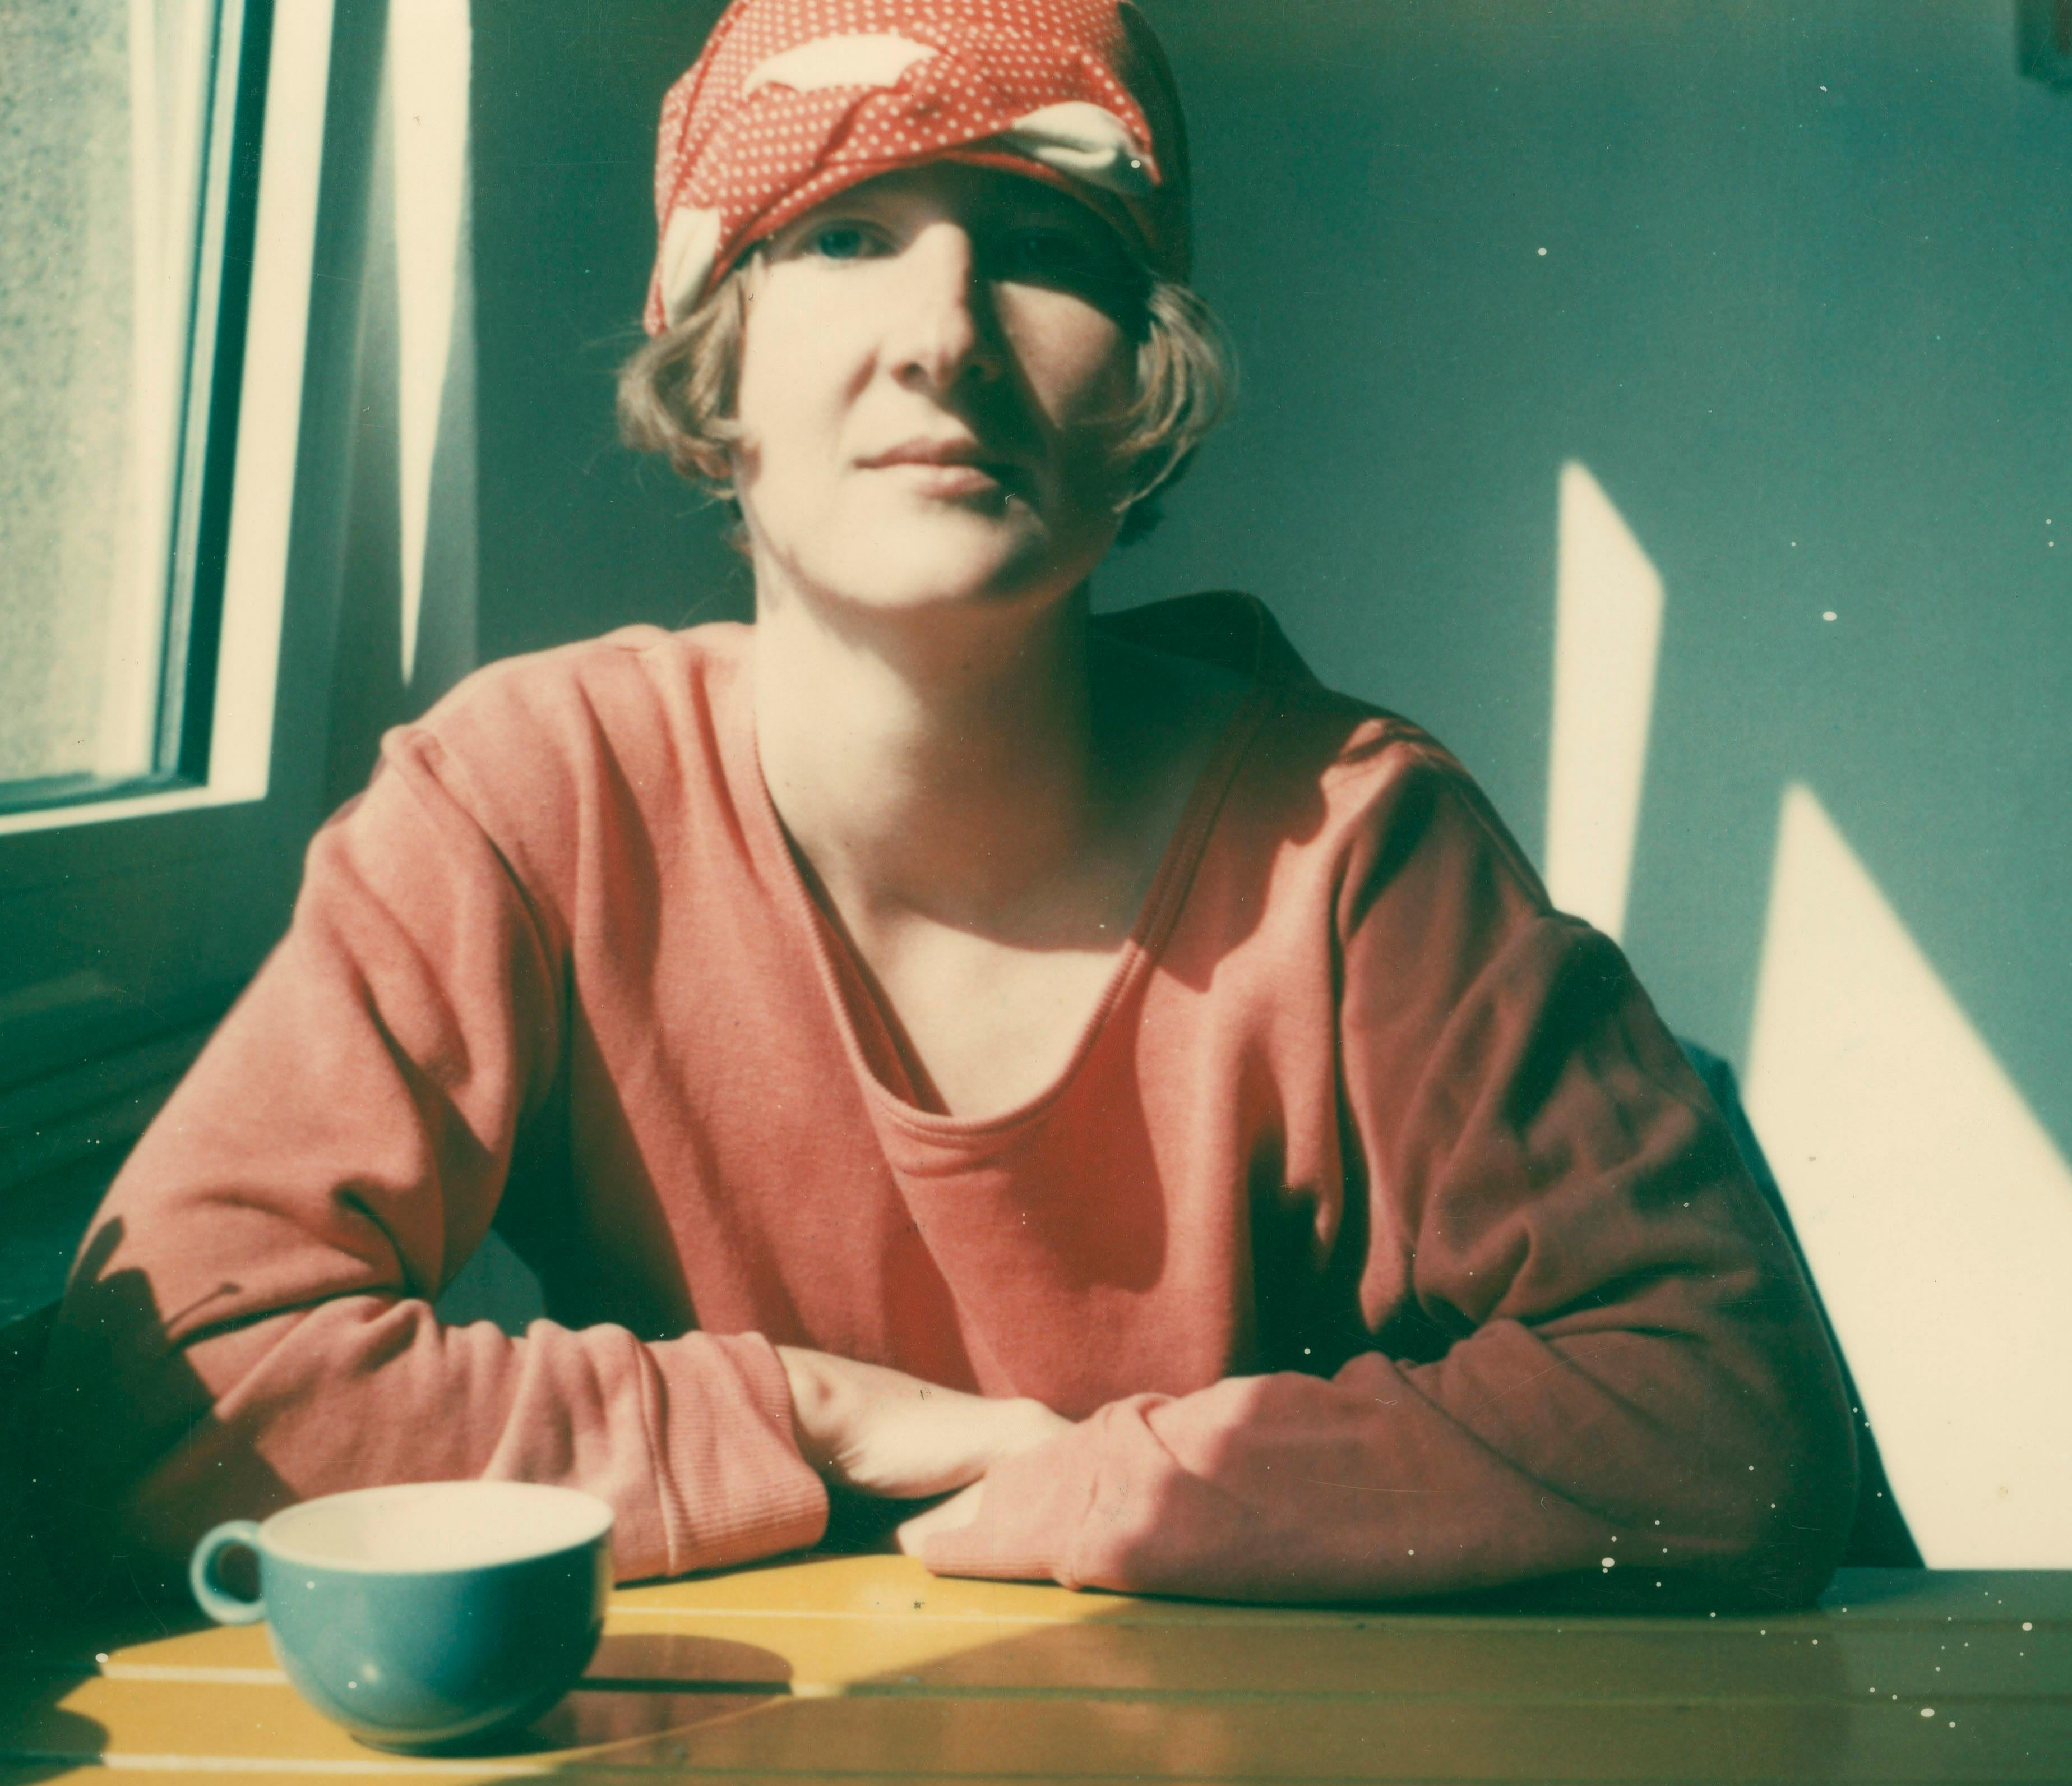 Jeanne, 1993 - Photograph de Stefanie Schneider